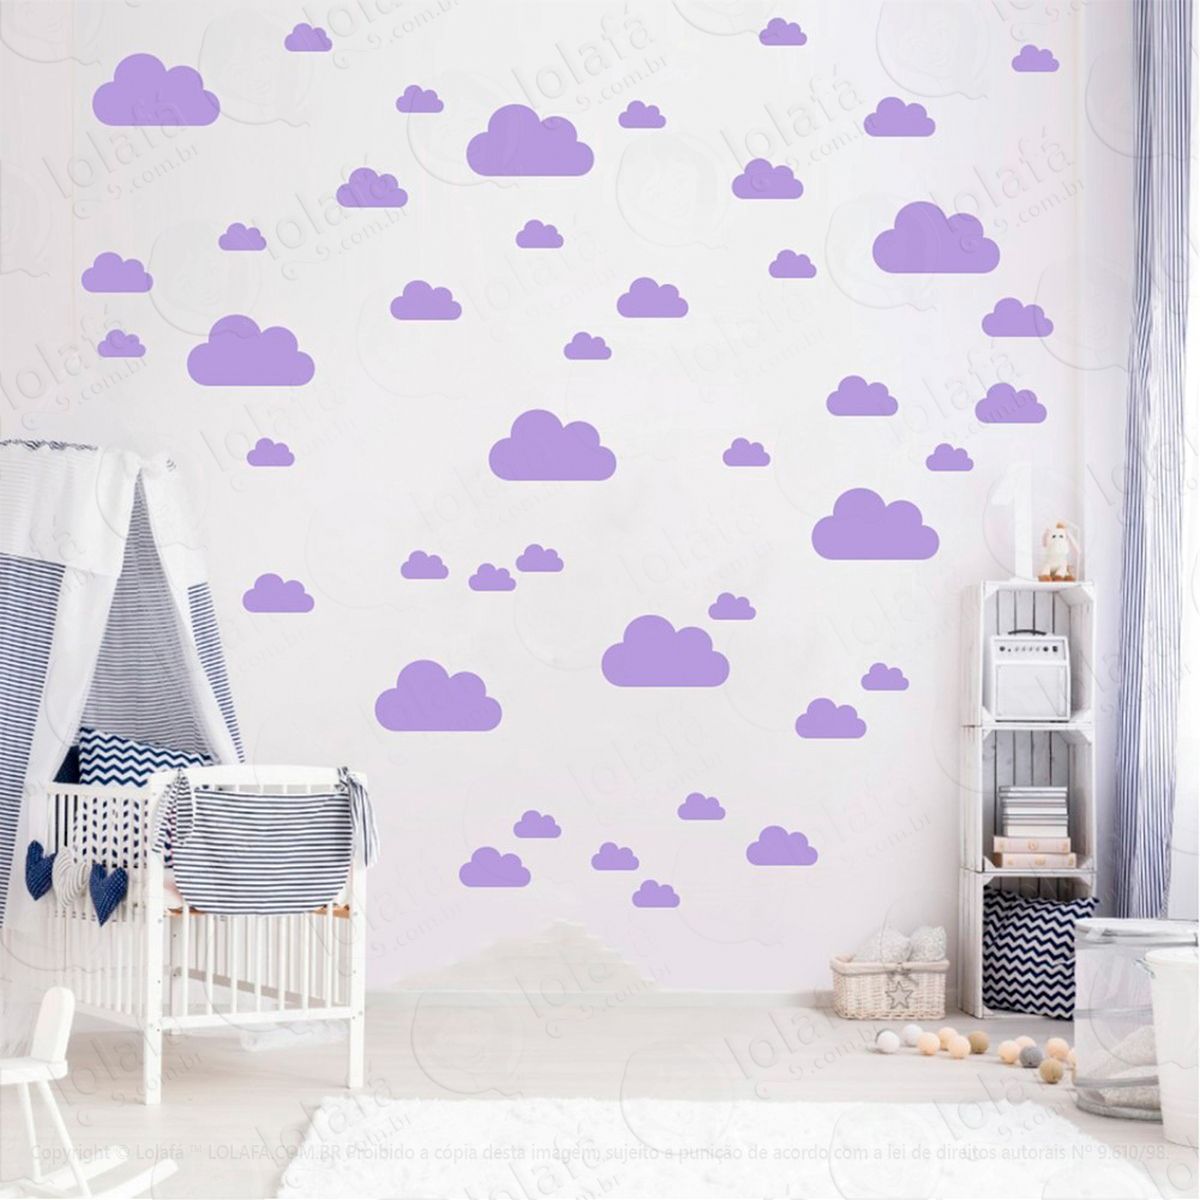 adesivos nuvens 78 peças adesivos para quarto de bebê infantil - mod:757